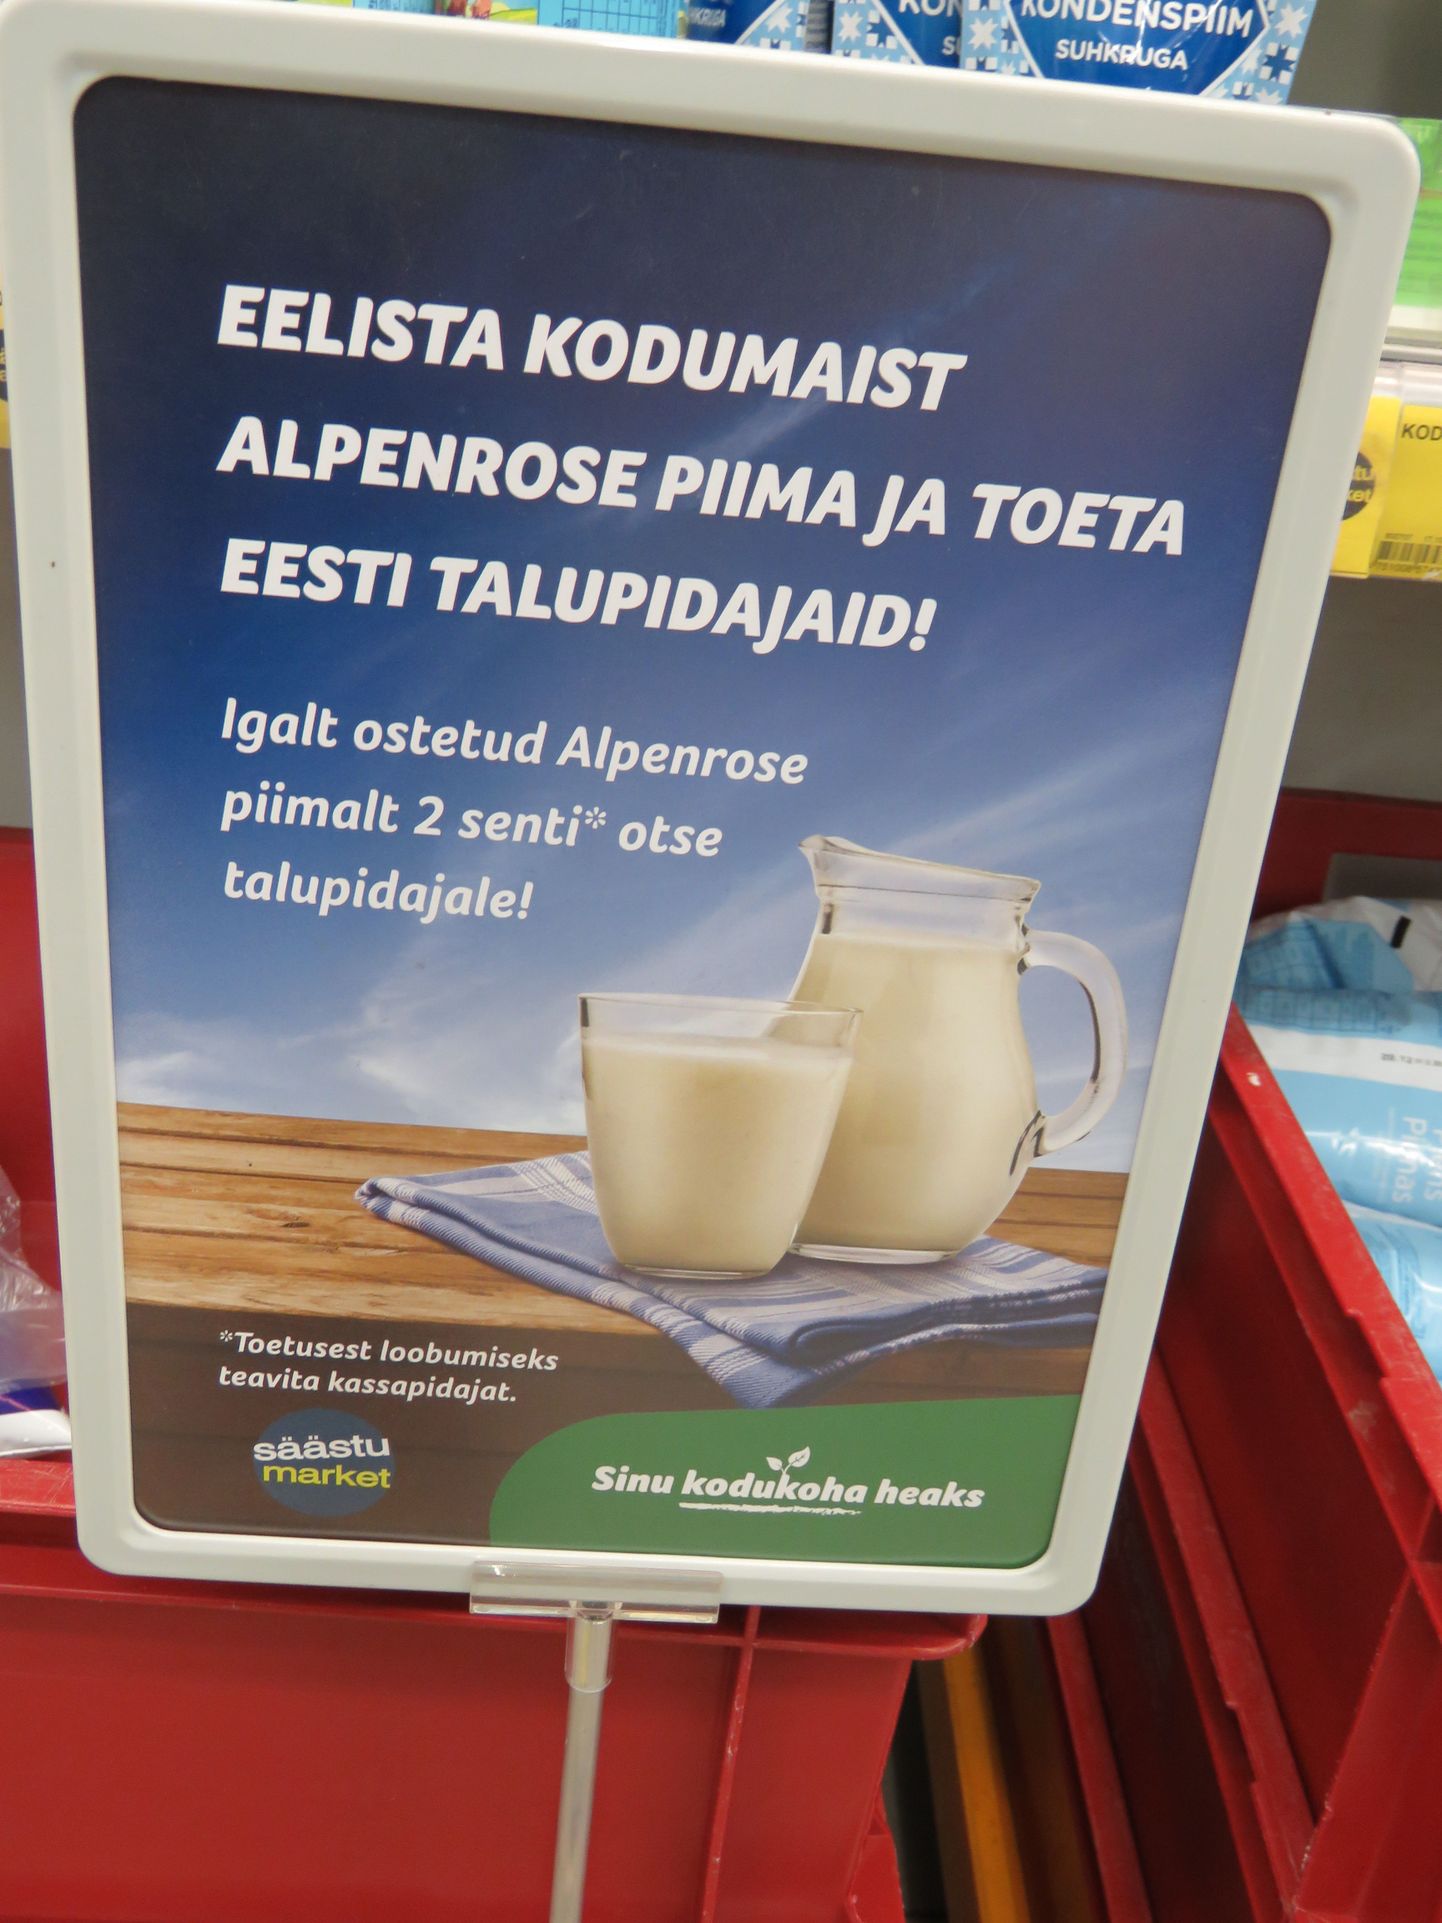 Odavaimat piimahinda taga ajades ei pruugi ju klient mõelda sedavõrd kaugele, et see võib otseselt mõjutada asjaolu, kas ta ka tulevikus saab poest Eesti piimast tehtud tooteid osta.